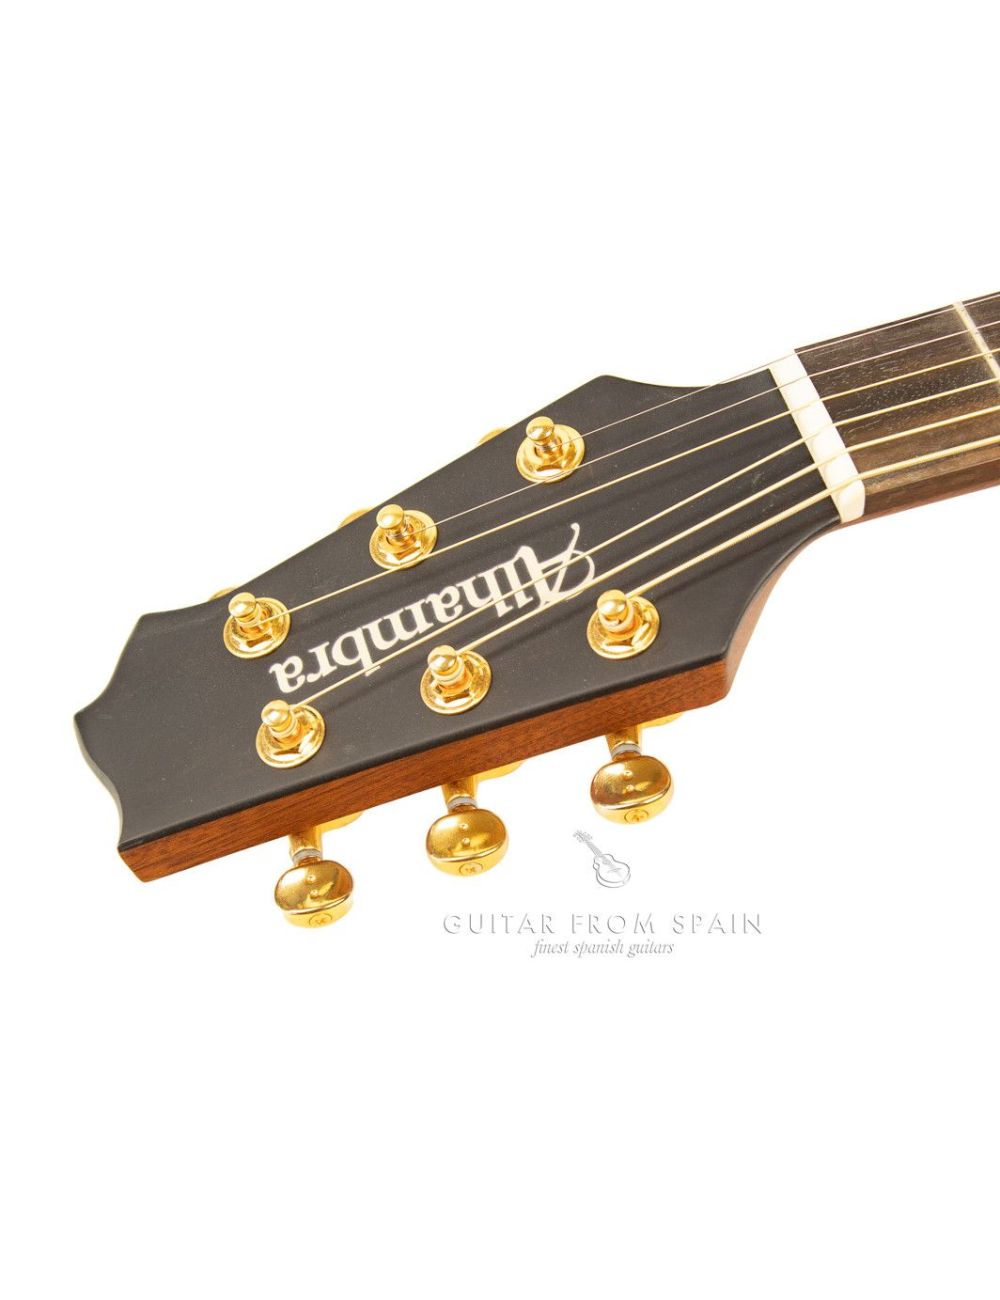 Alhambra Auditorium Model 1272 Guitare acoustique